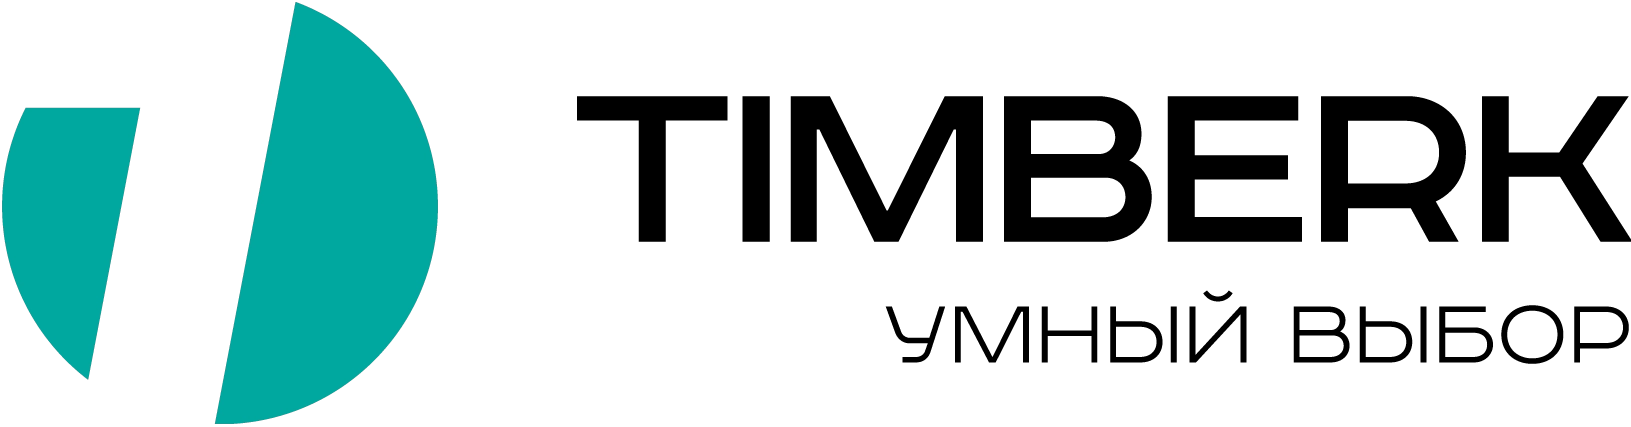 Логотип Timberk